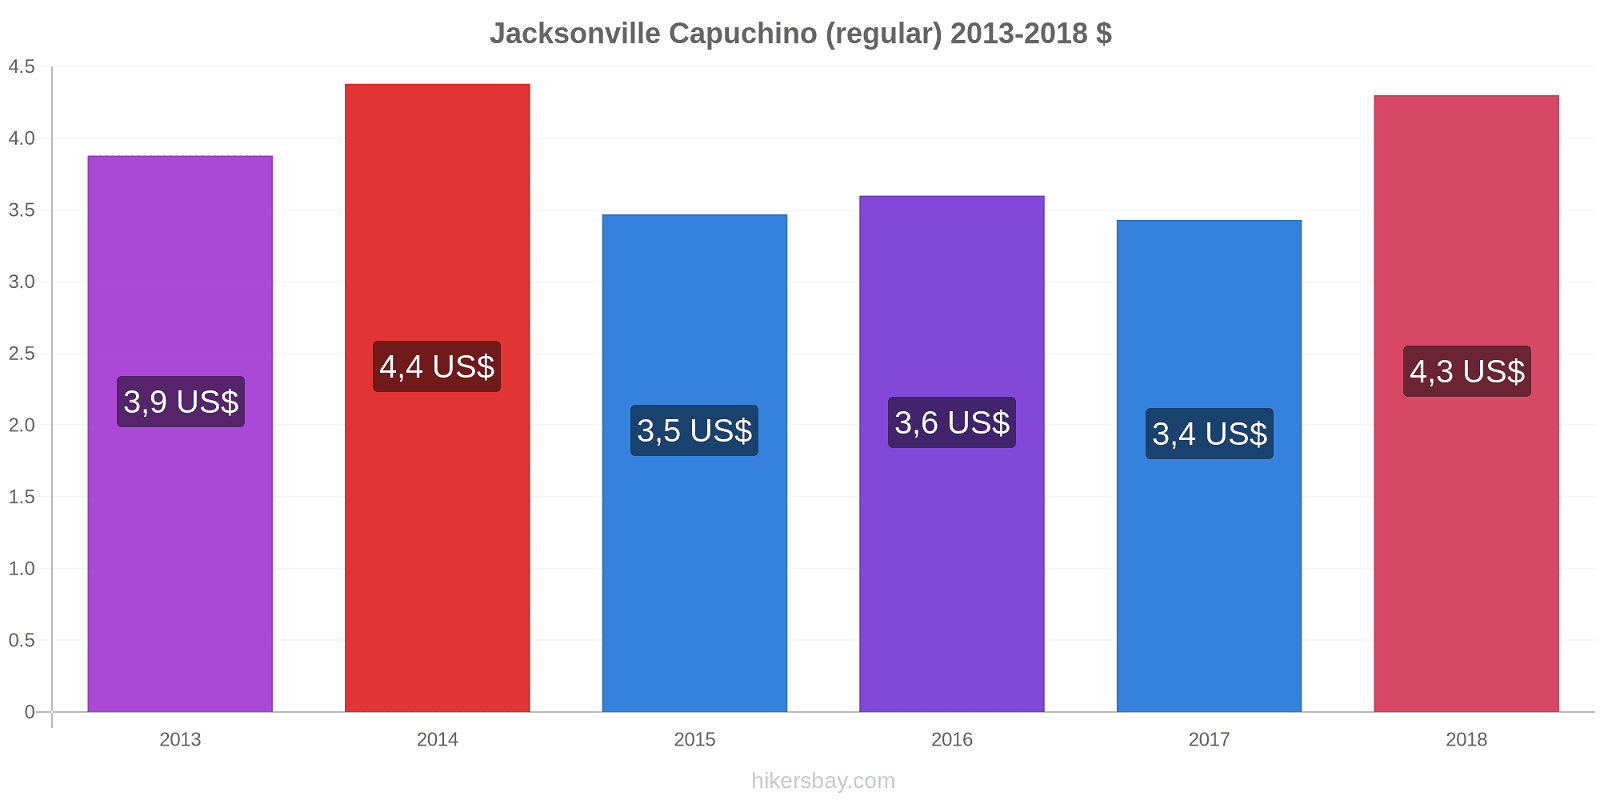 Jacksonville cambios de precios Capuchino (regular) hikersbay.com